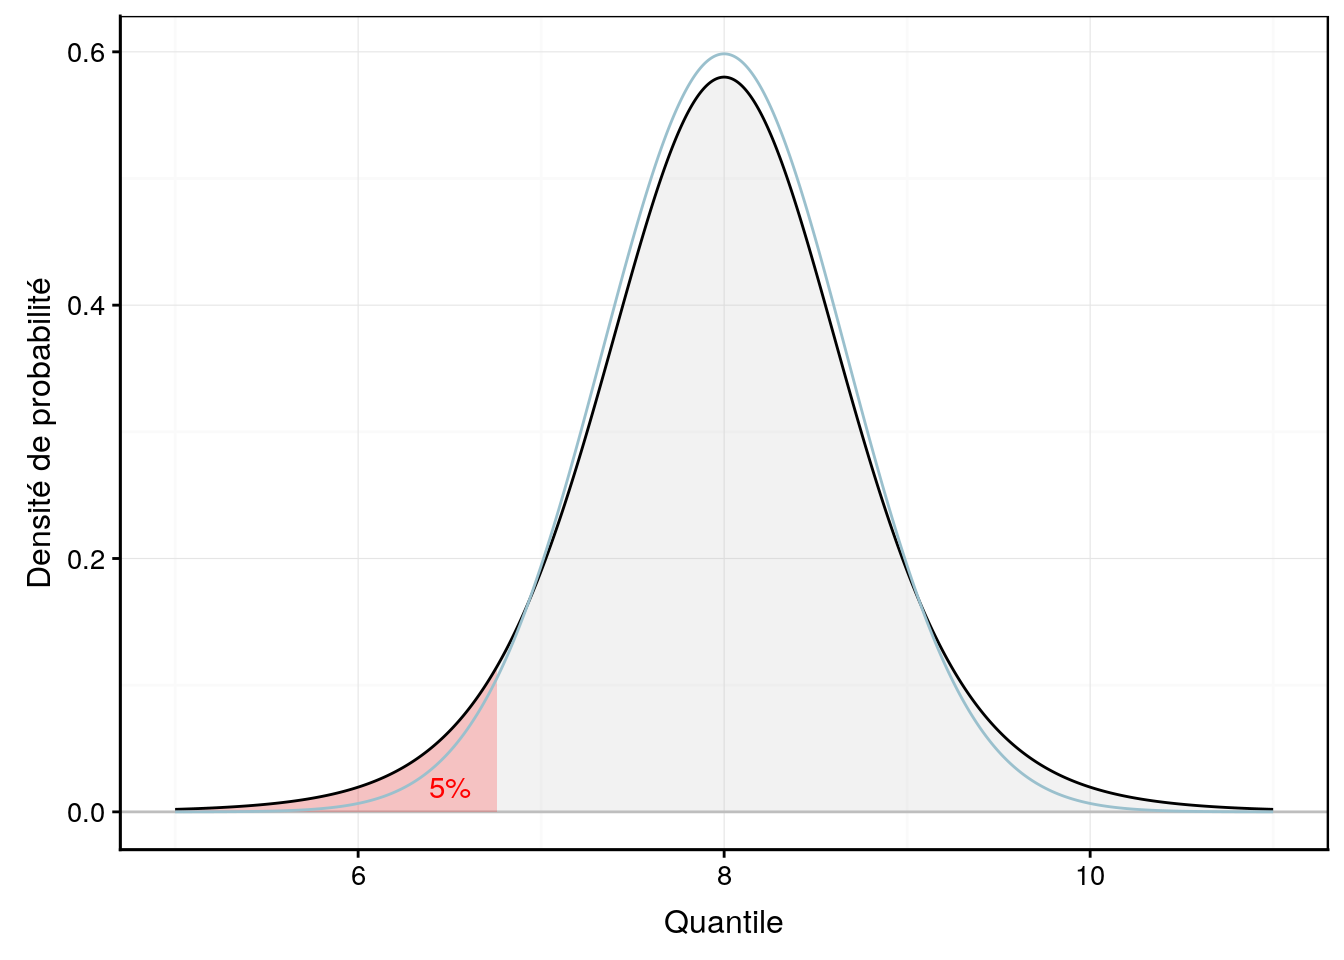 Une distribution de Student avec aire à gauche de 5% mise en évidence en rouge. La distribution normale équivalente est superposée en bleu clair.